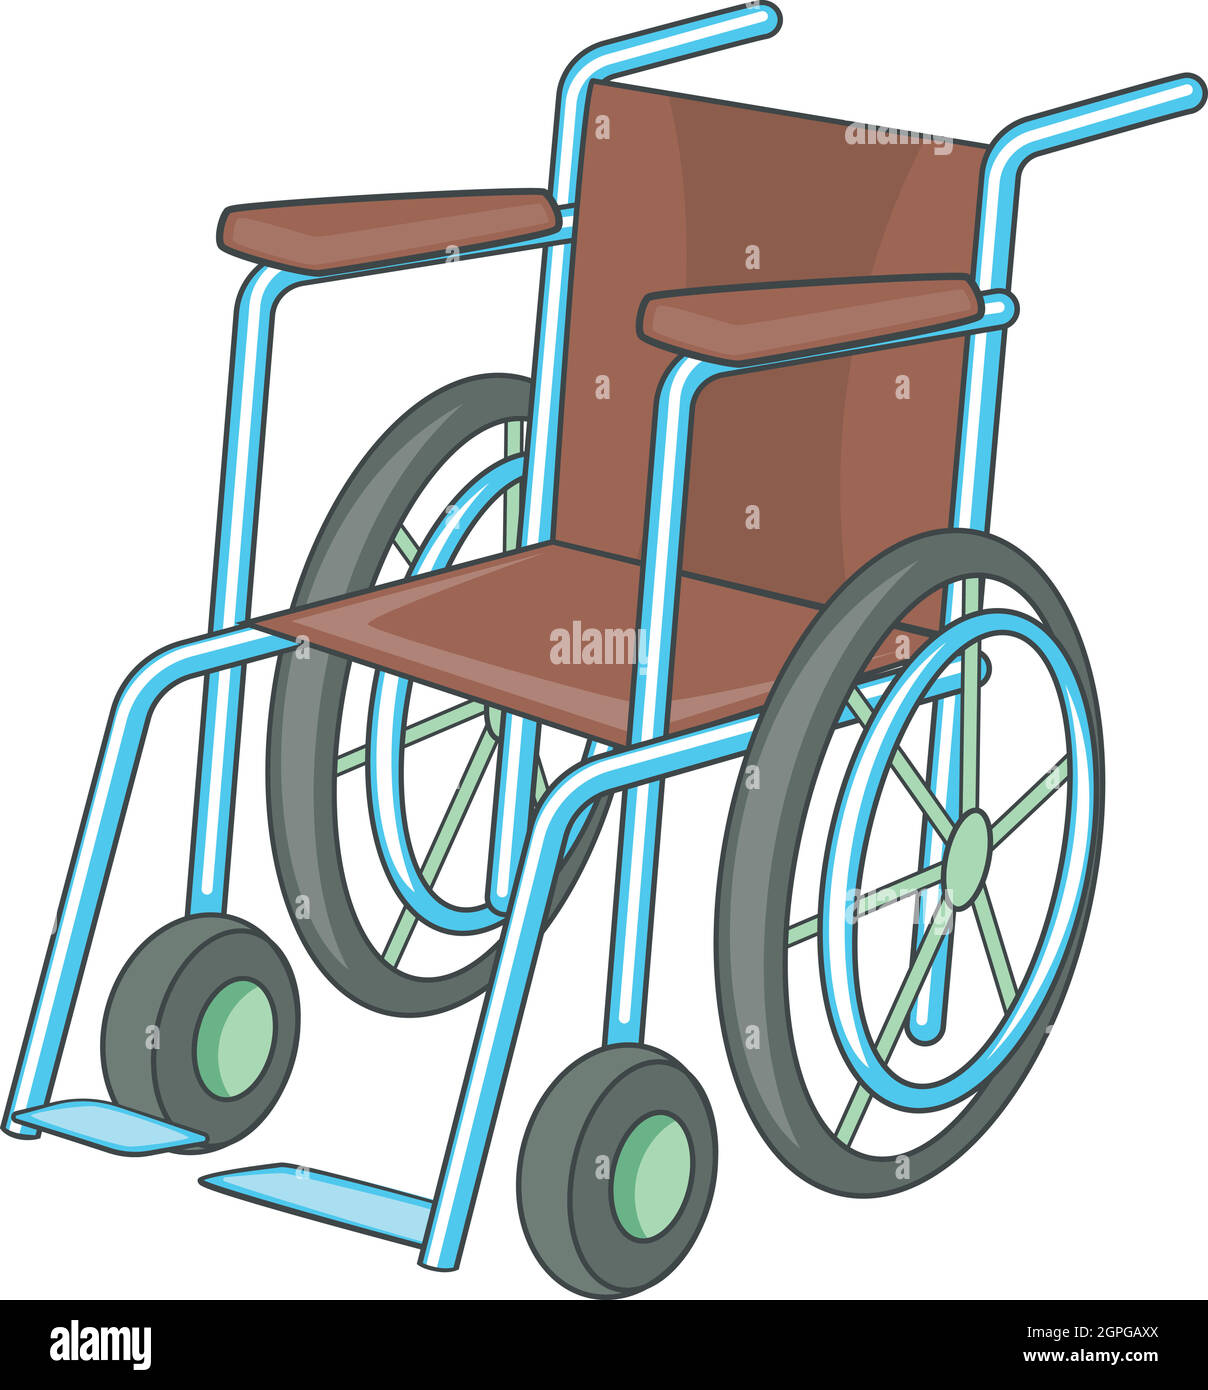 Rollstuhl-Symbol, Cartoon-Stil Stock Vektor